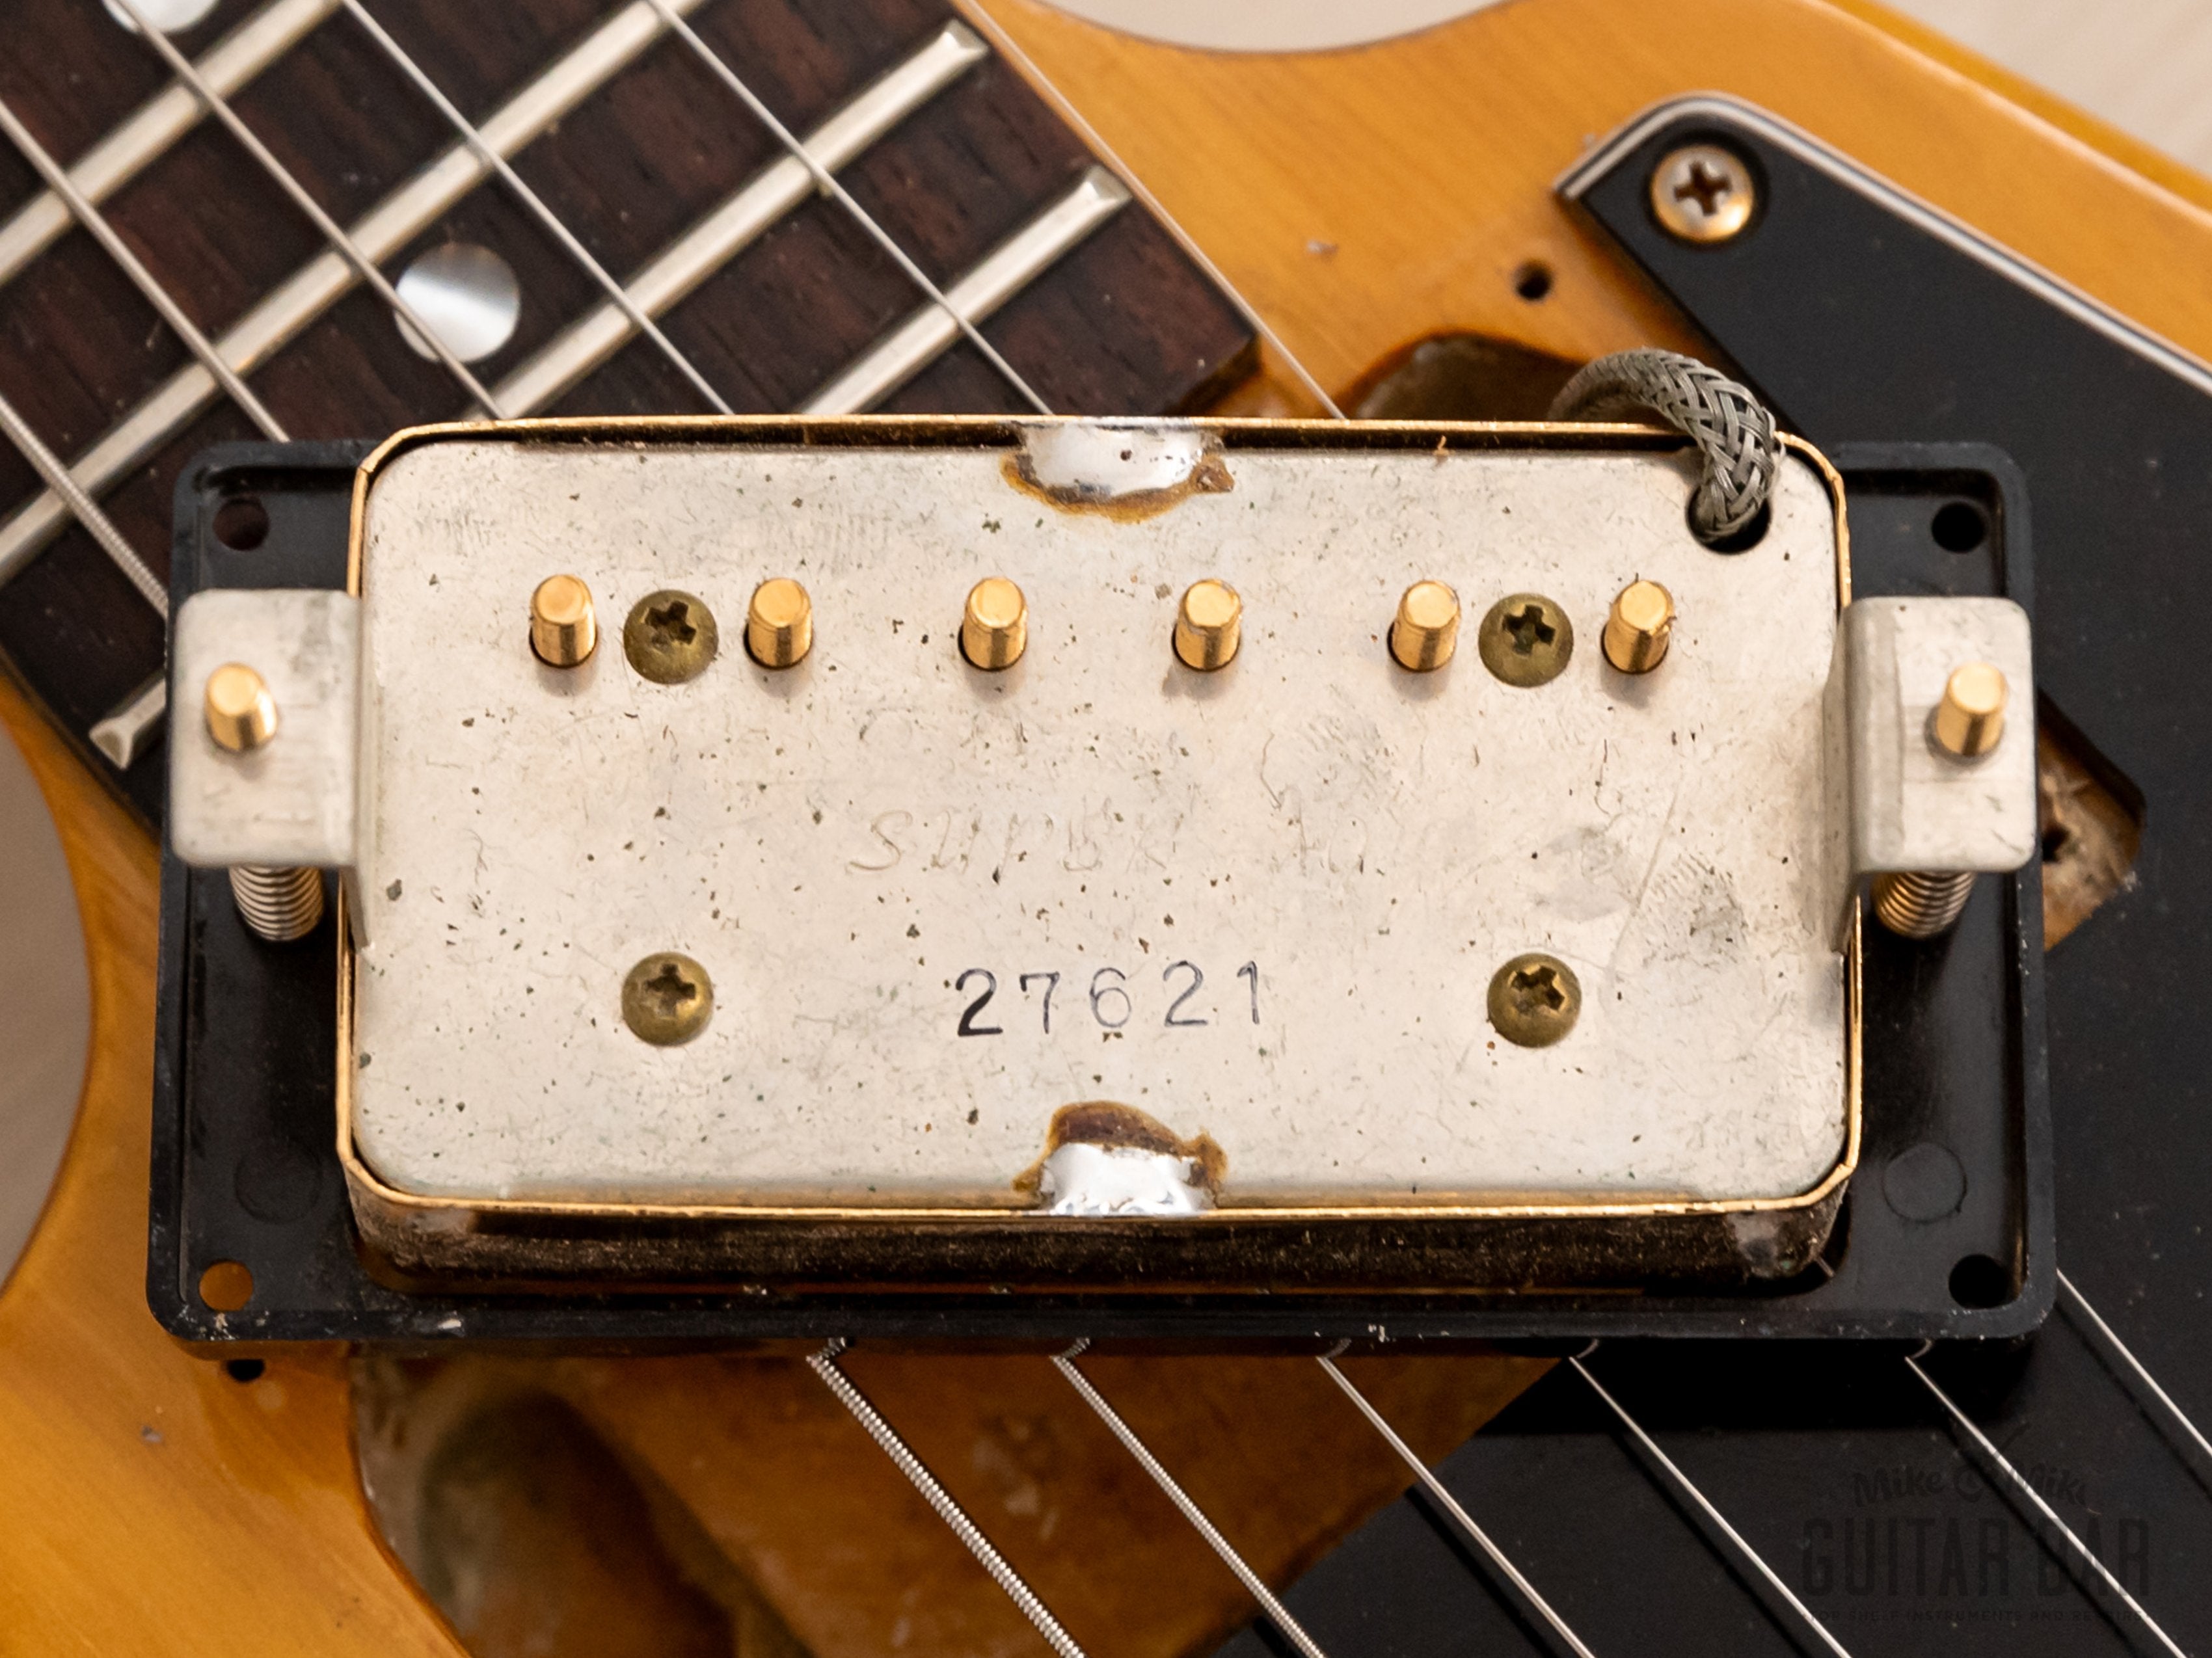 1977 Ibanez Rocket Roll Sr 2387 Flying V Vintage Guitar, 100% Original w/ Super 70, Case